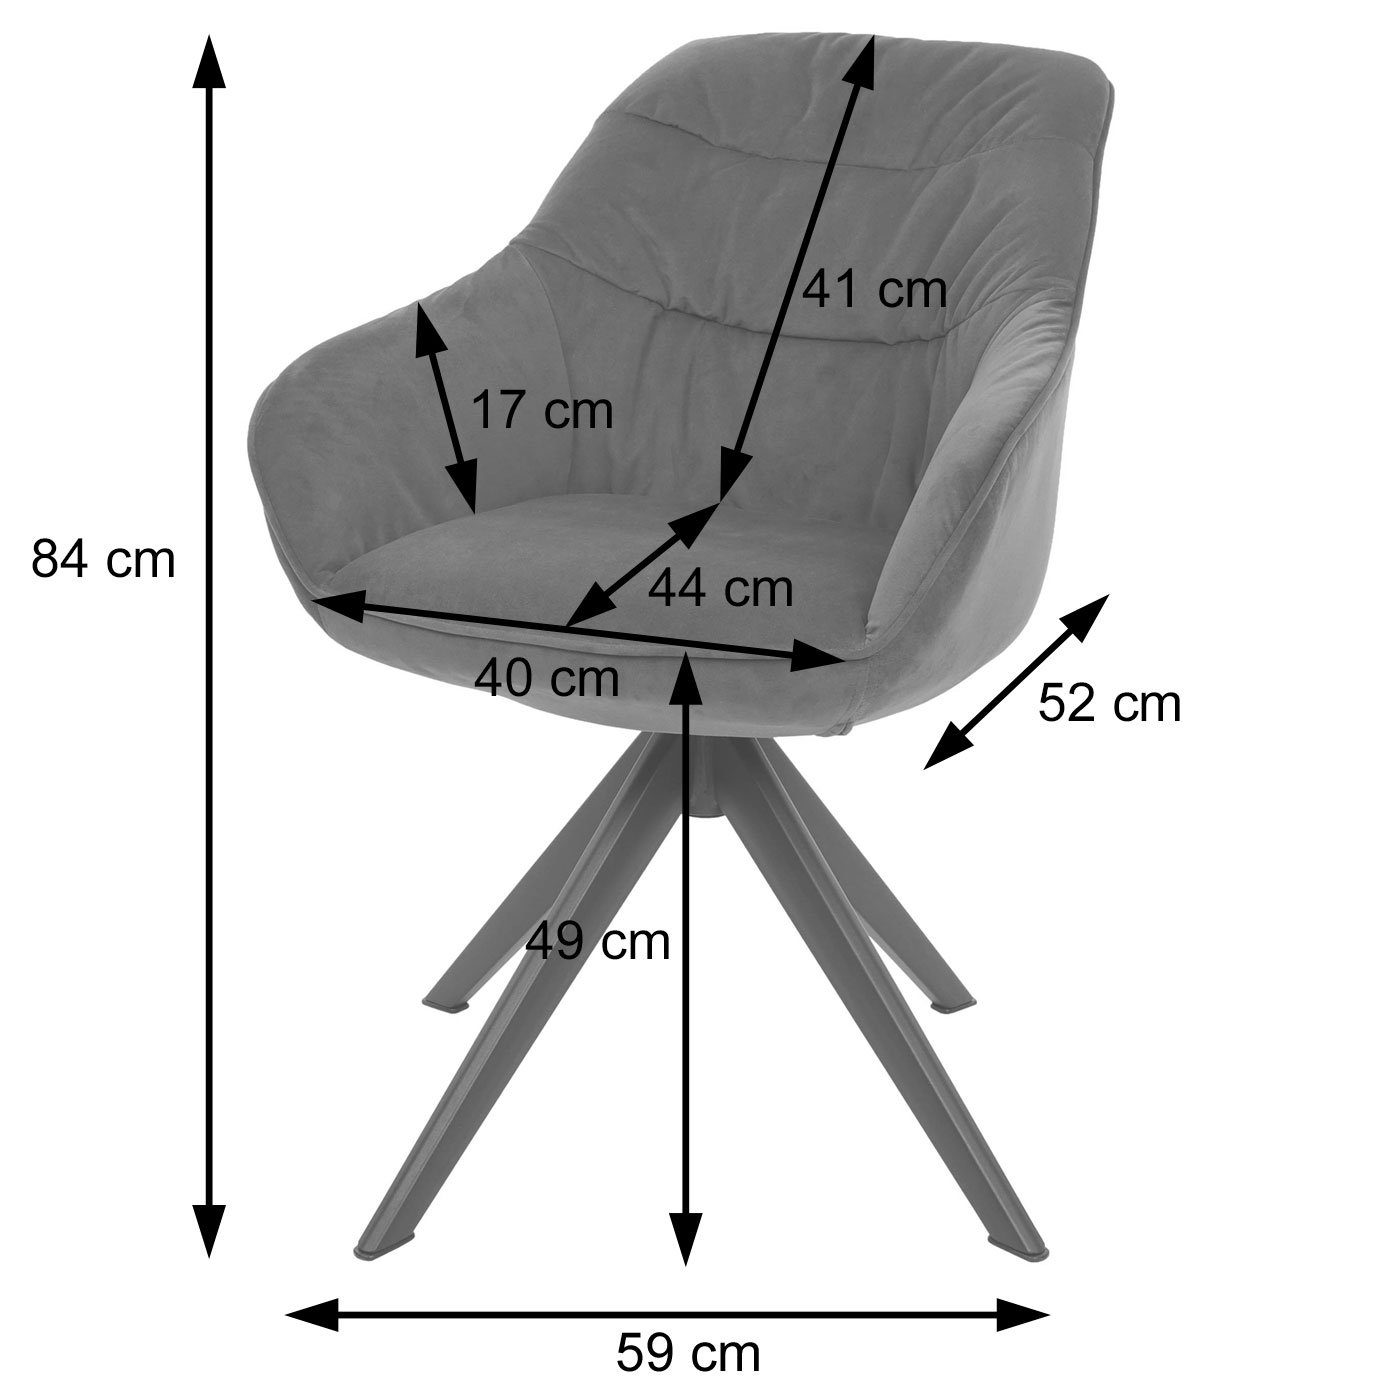 MCW-K28-6 Eisen-Gestell, mit Fußbodenschoner, | MCW Esszimmerstuhl Armlehnen grau (6er), grau Sitzfläche Stabiles